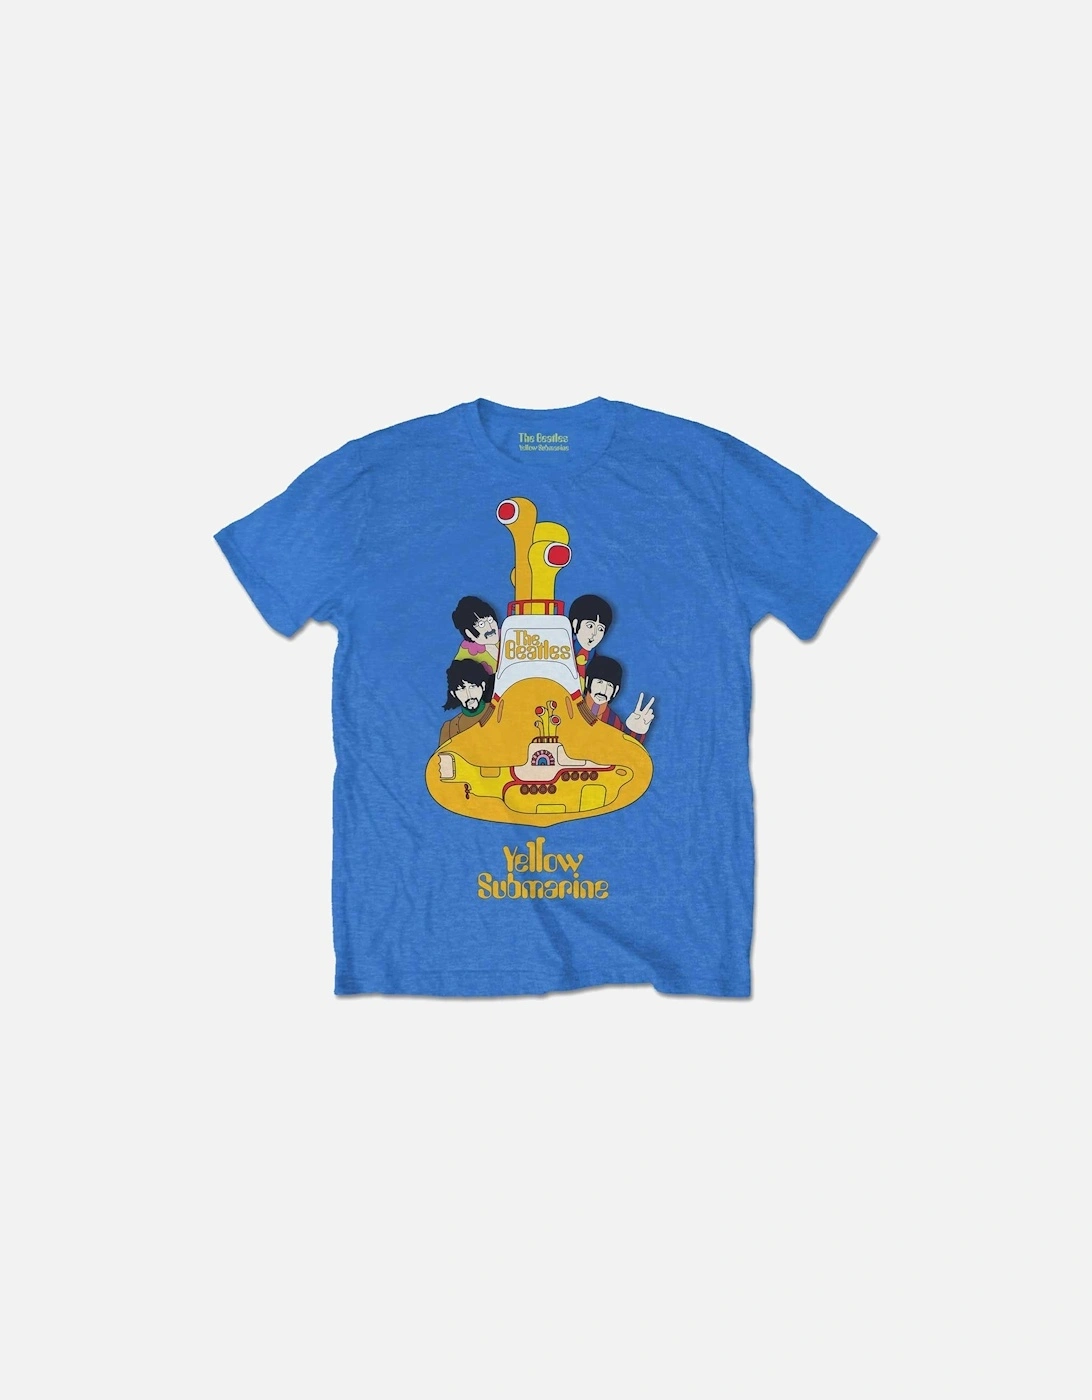 Childrens/Kids Yellow Submarine Cotton T-Shirt, 2 of 1